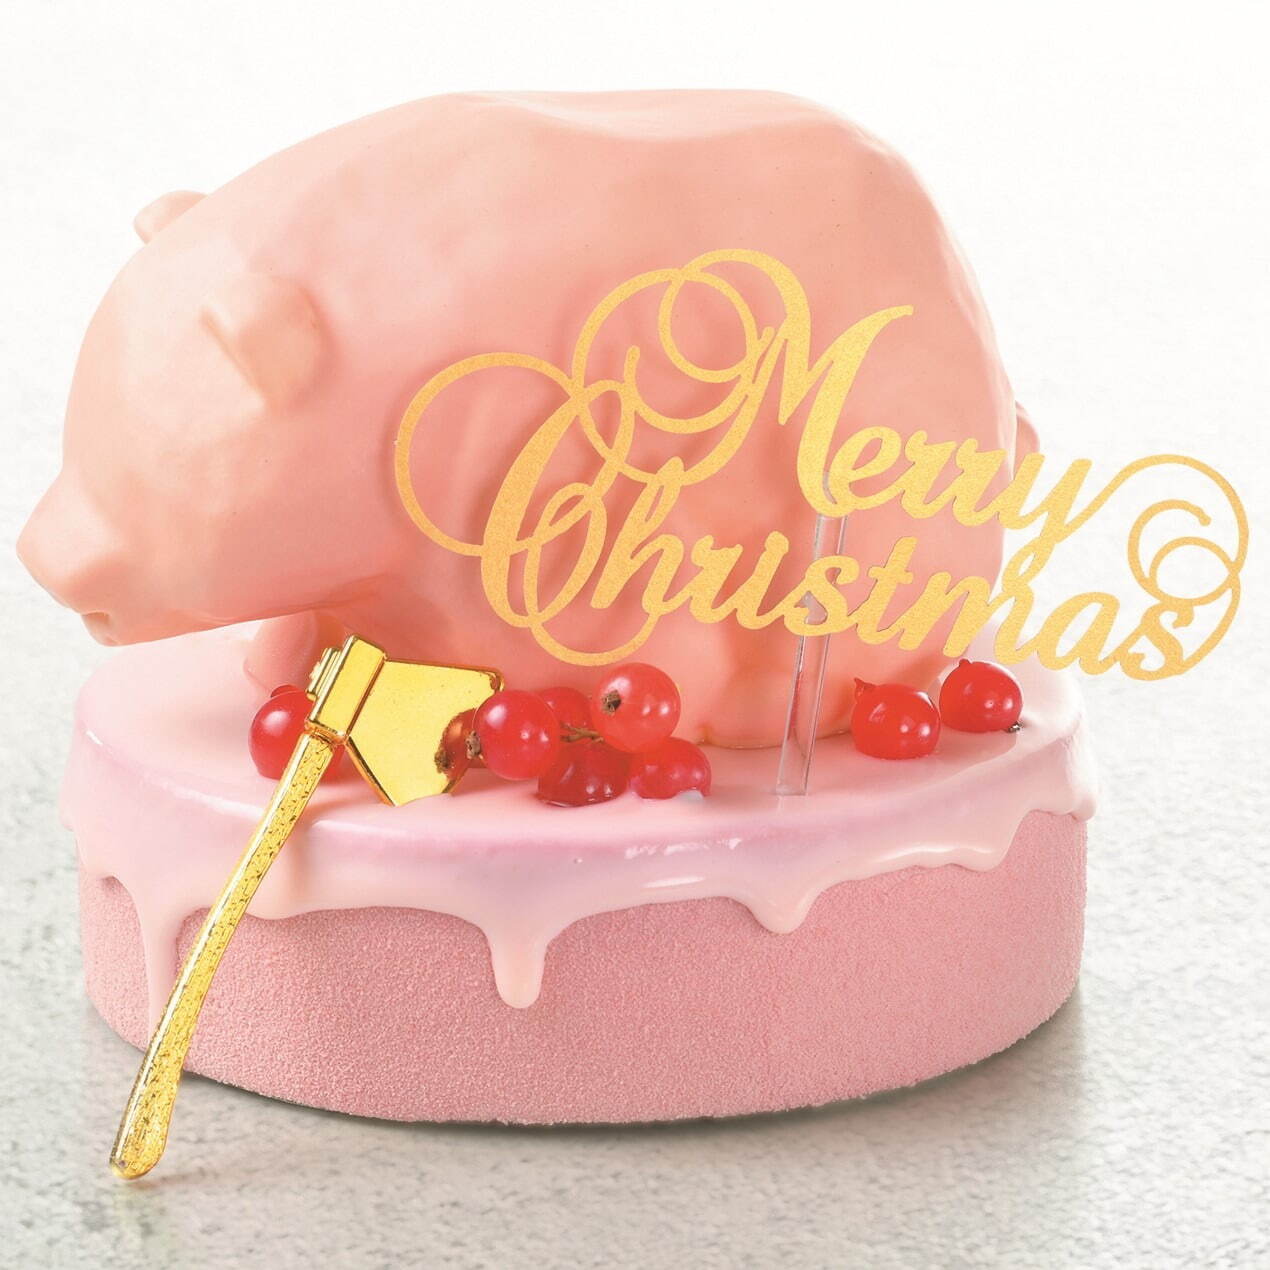 京王百貨店23年クリスマスケーキ、オーナメントのプティガトーを乗せた ...